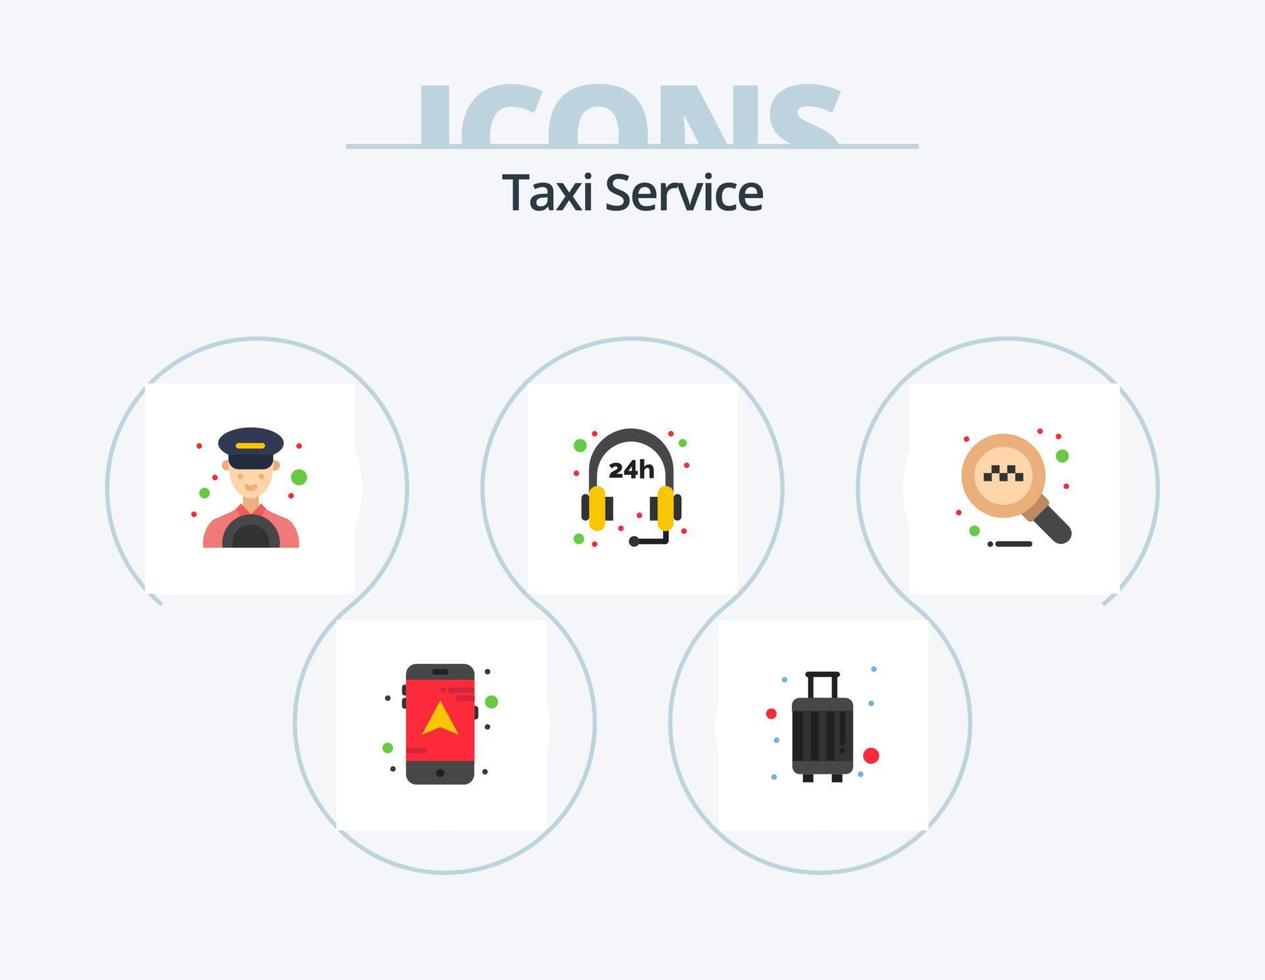 servicio de taxi paquete de iconos planos 5 diseño de iconos. . buscar. auto. en línea. apoyo vector